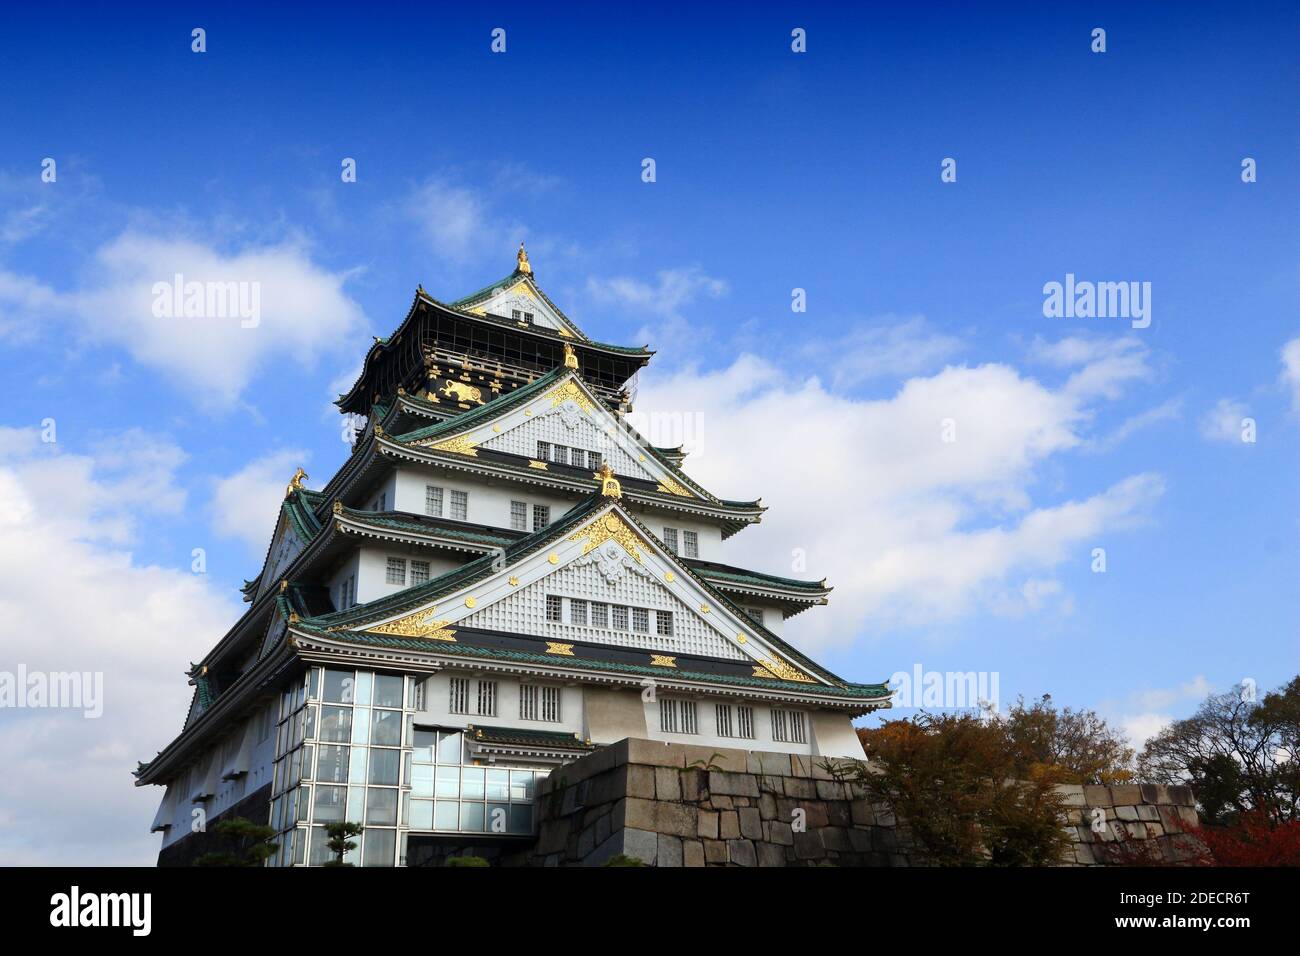 Osaka landmark - Osaka Castle. Japanese architecture landmark. Stock Photo